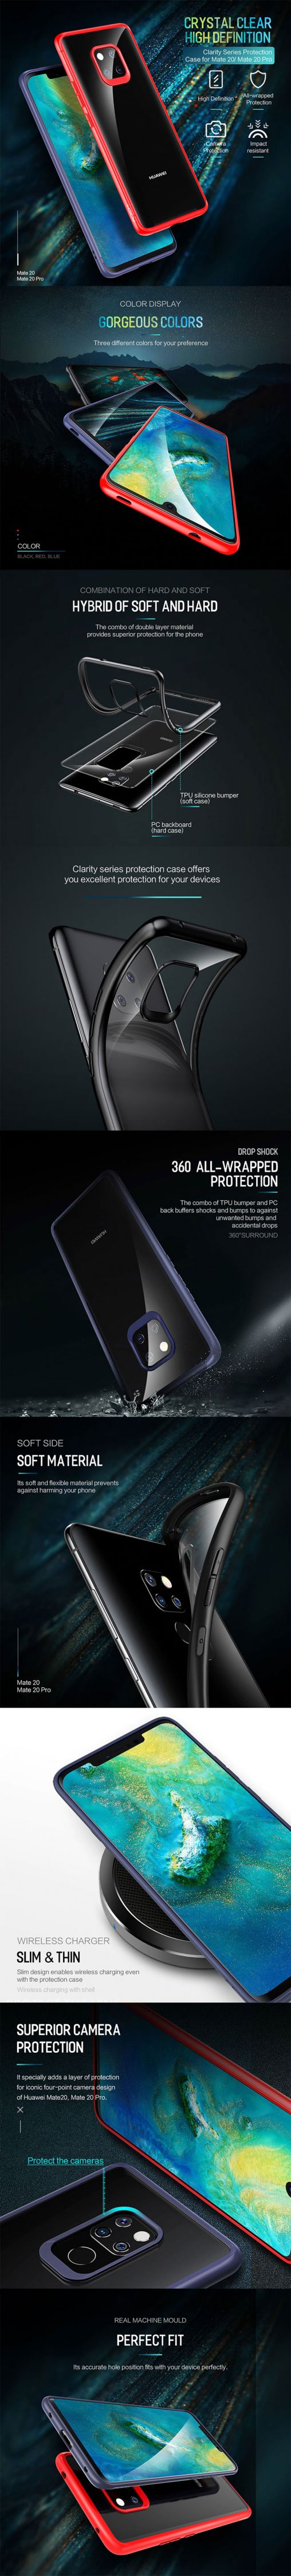 เคส Huawei Mate20 pro, Mate 20 ROCK หลังใสขอบสี Clarity Series